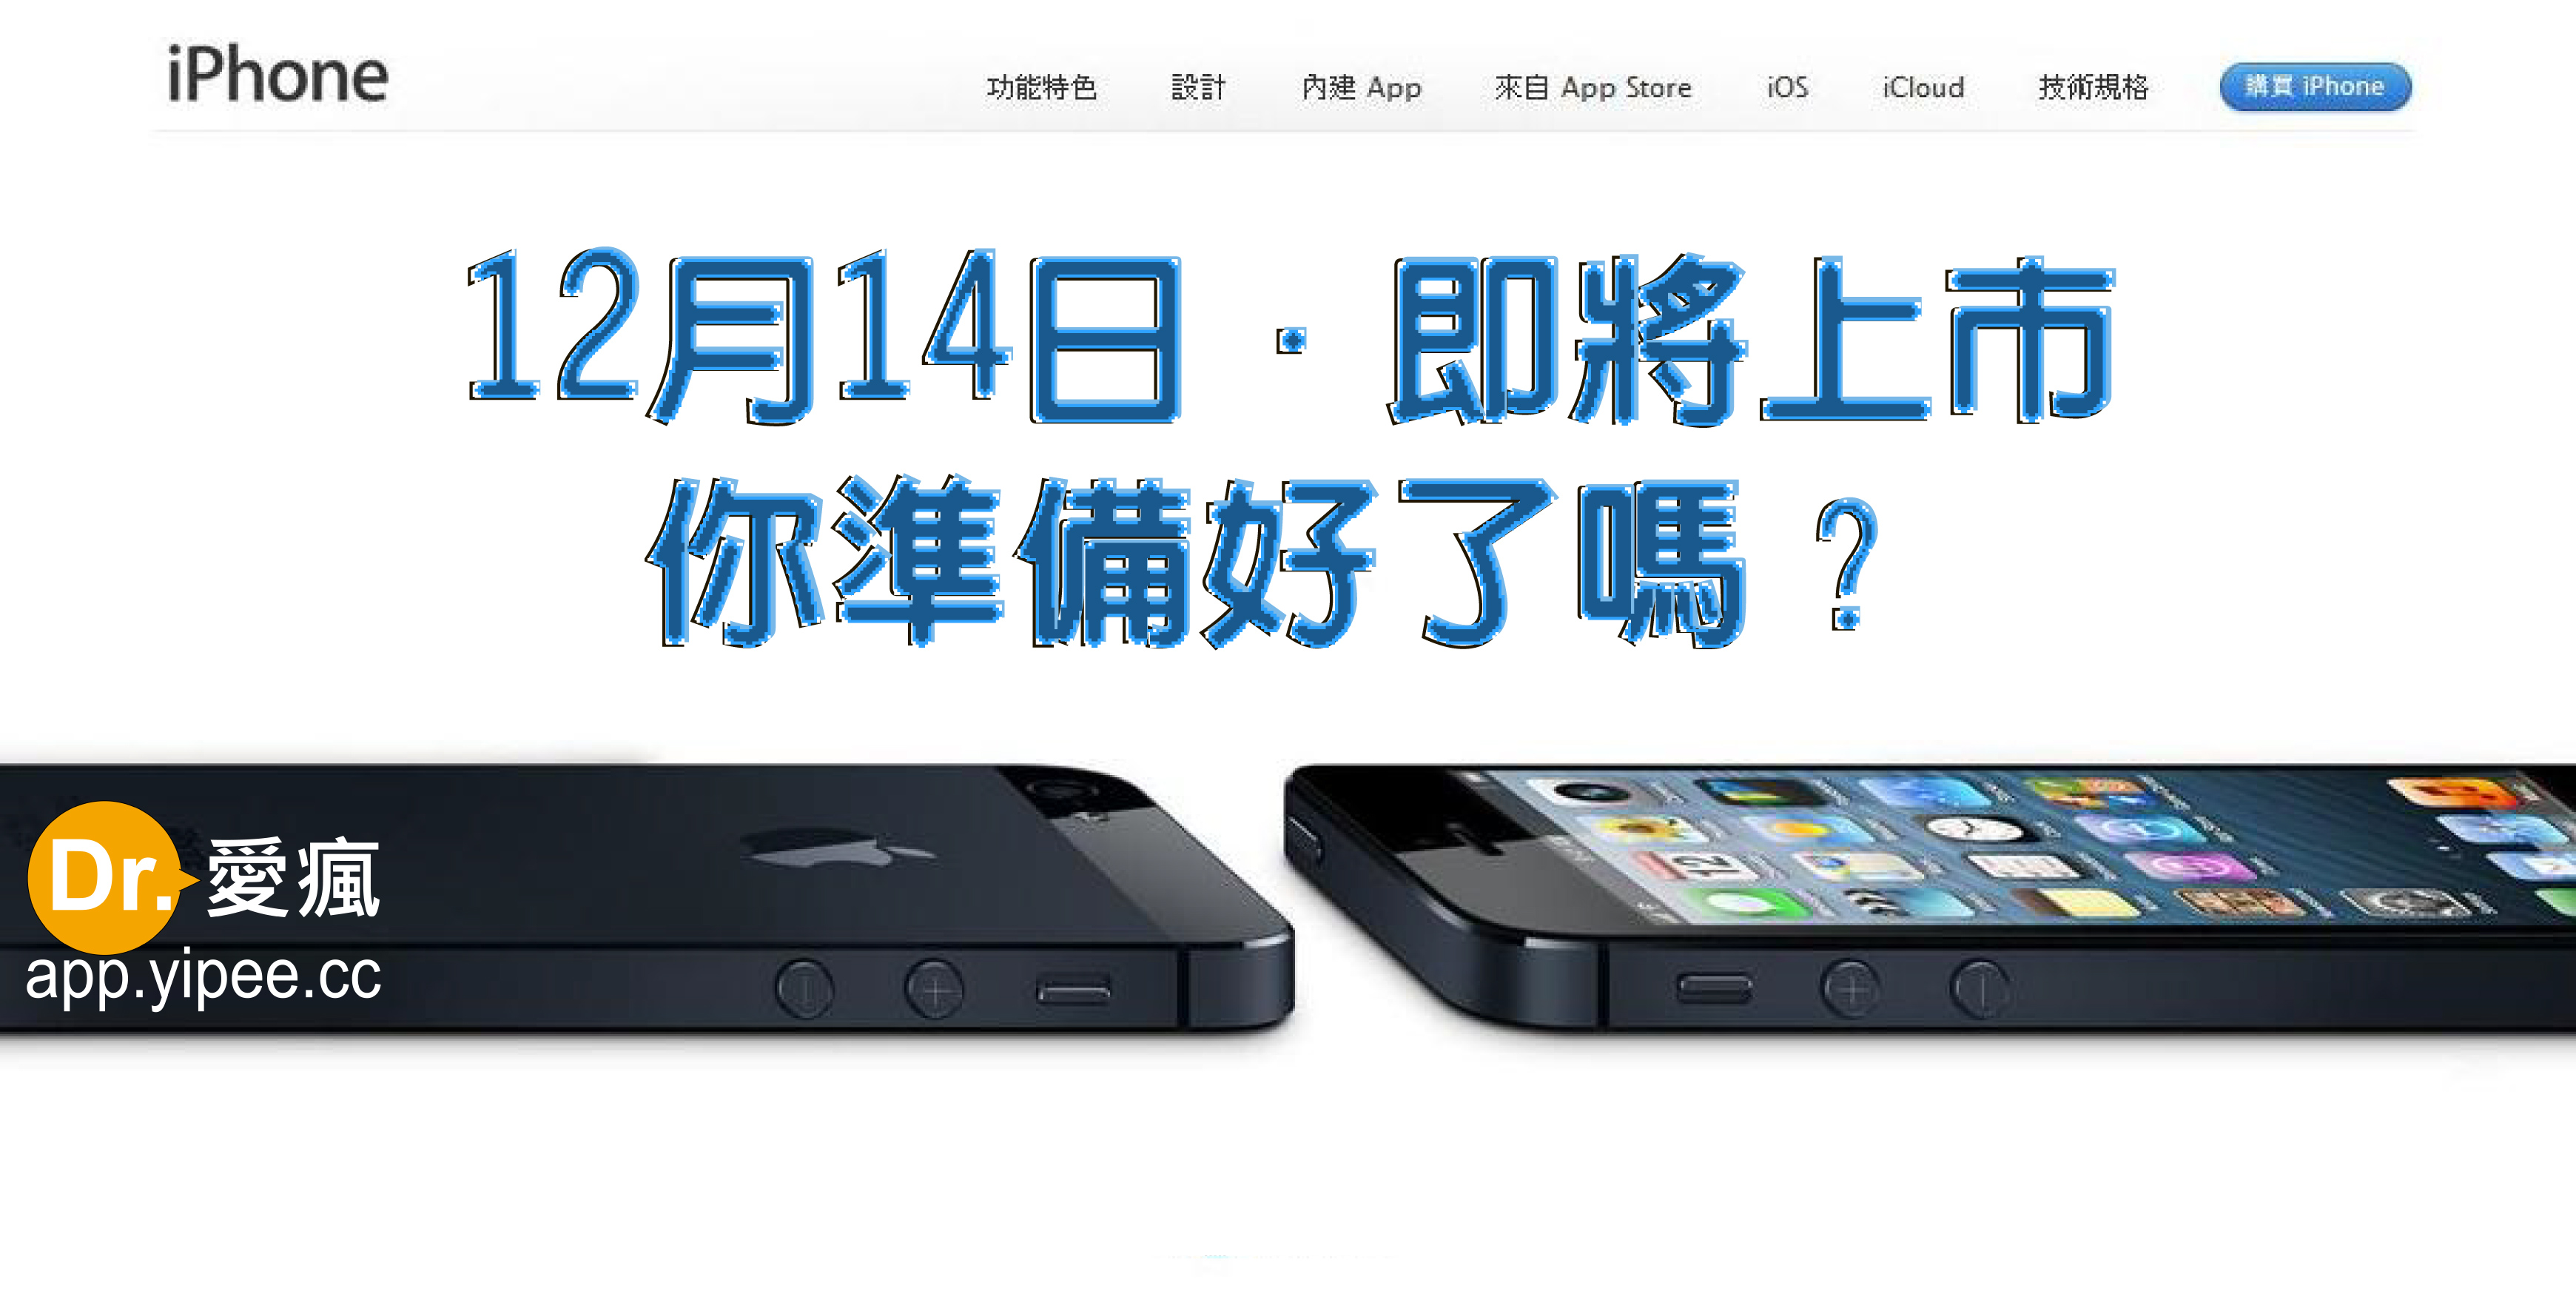 台灣地區iPhone 5 各電信商之間的各種門號方案綁約售價及空機價格超級 